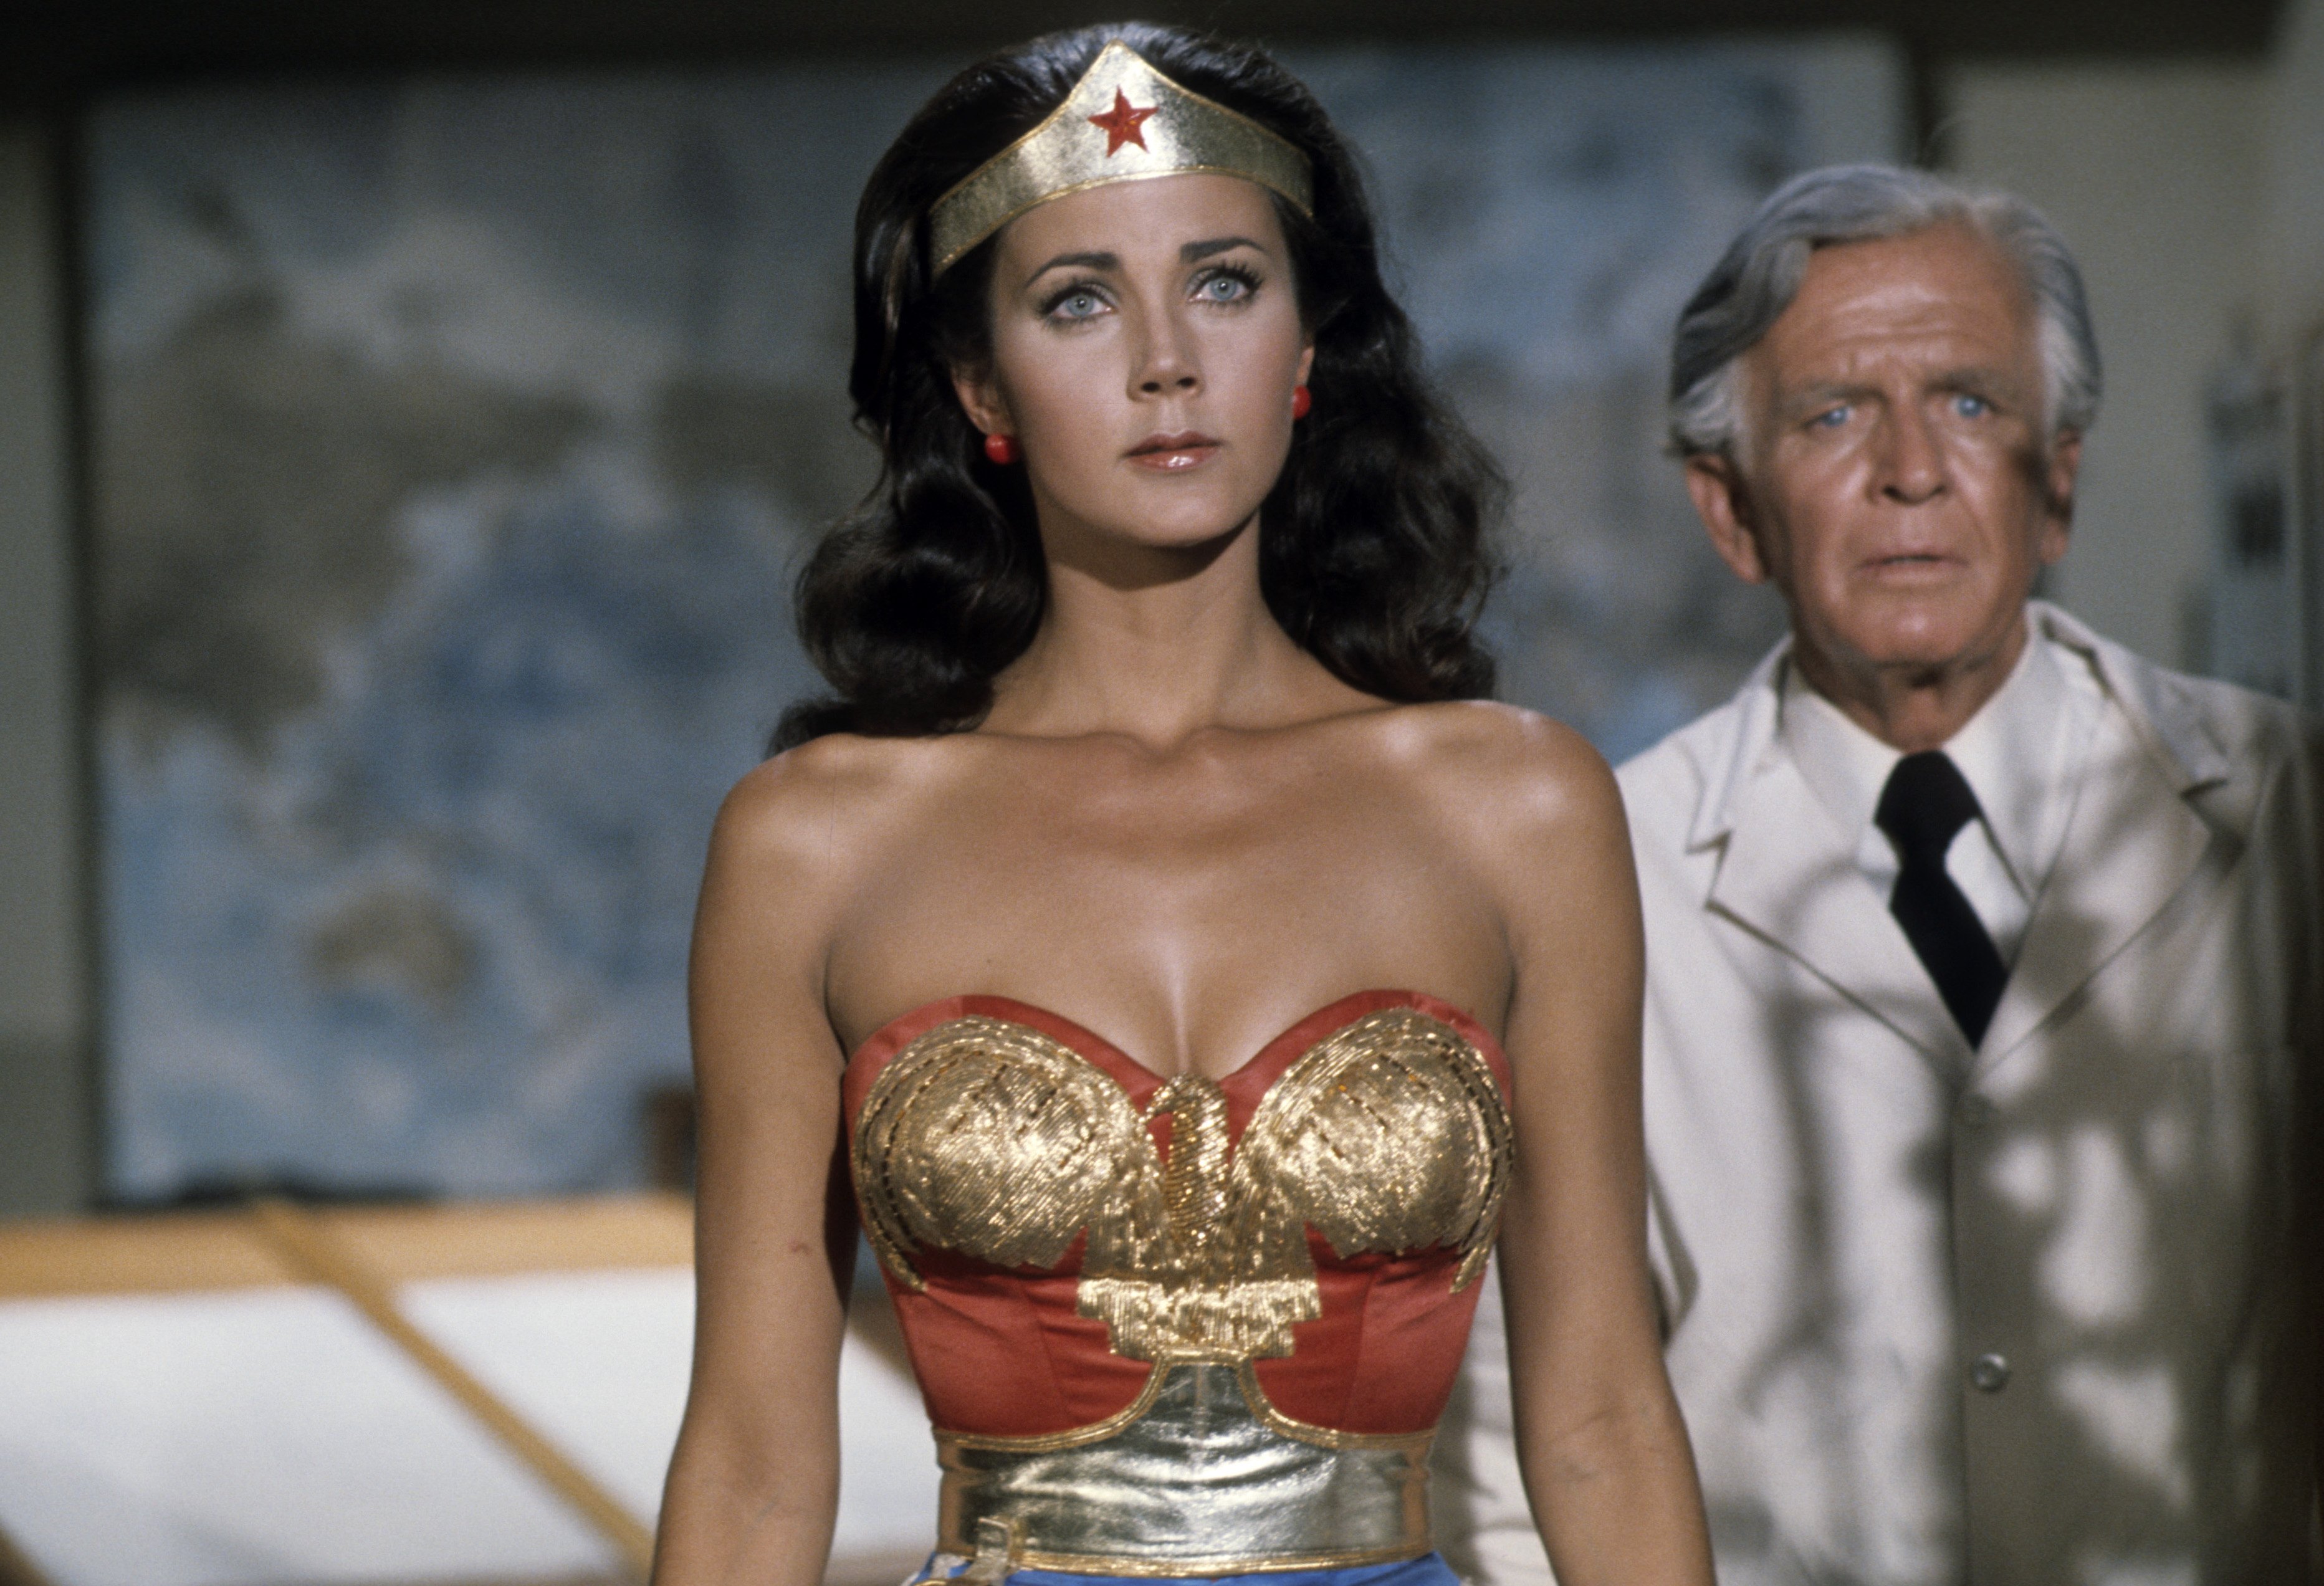 Lynda Carter dans "Wonder Woman", 25 décembre 1976 | Source : Getty Images